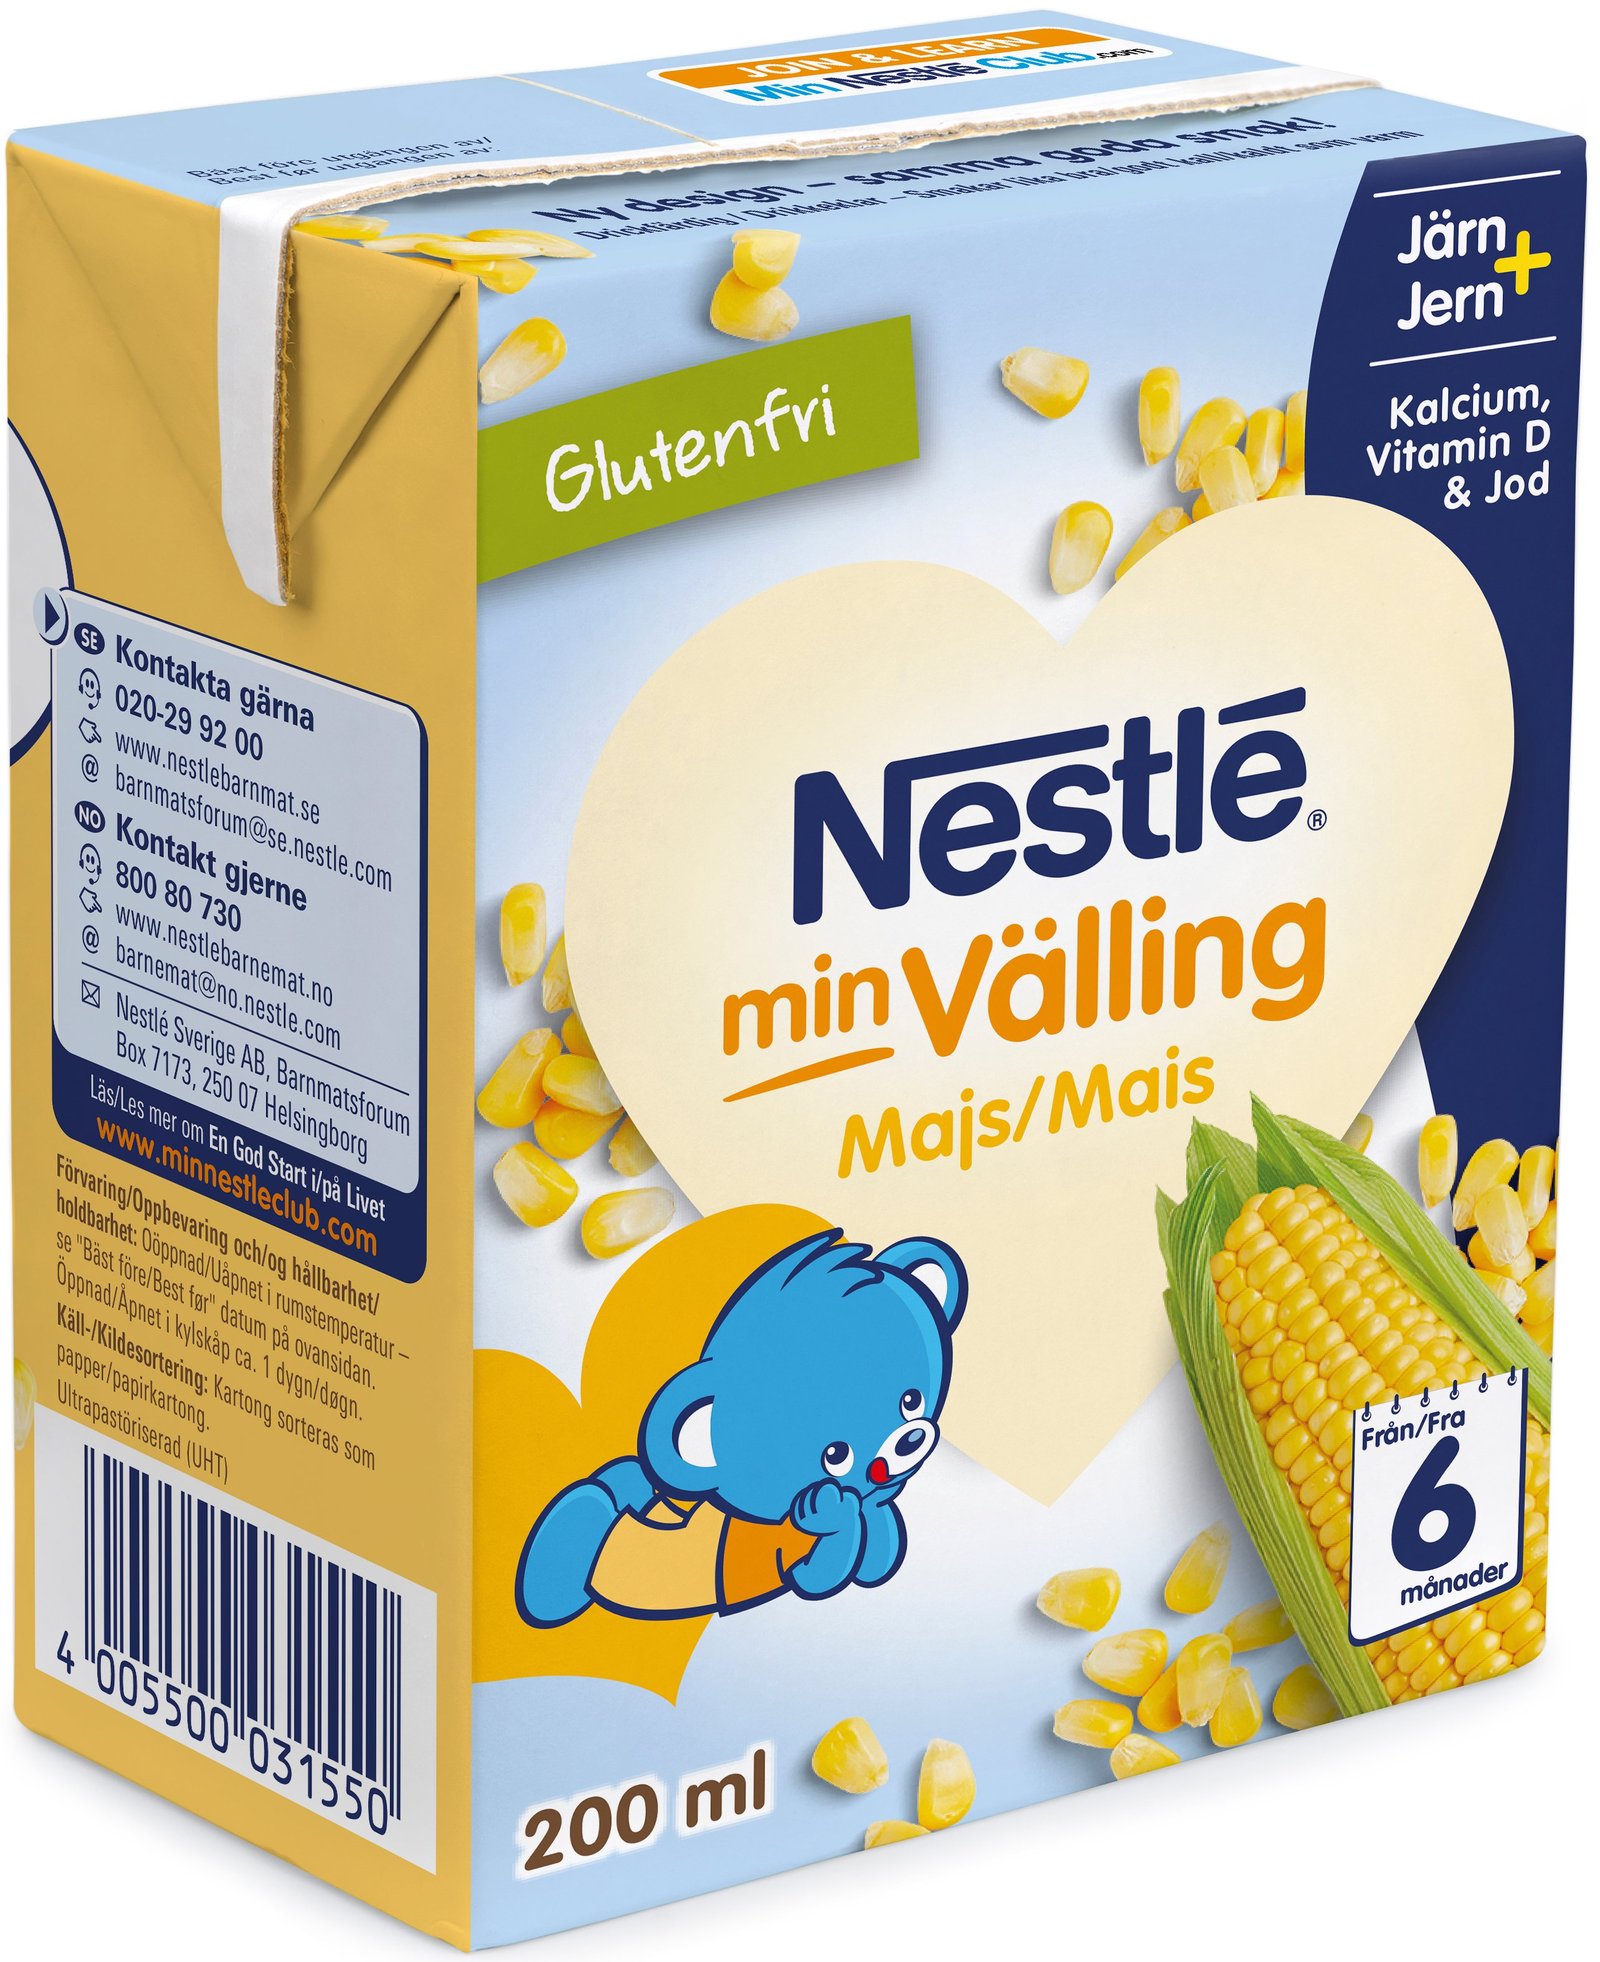 Nestlé Majsvälling drickfärdig 6 månader 200 ml